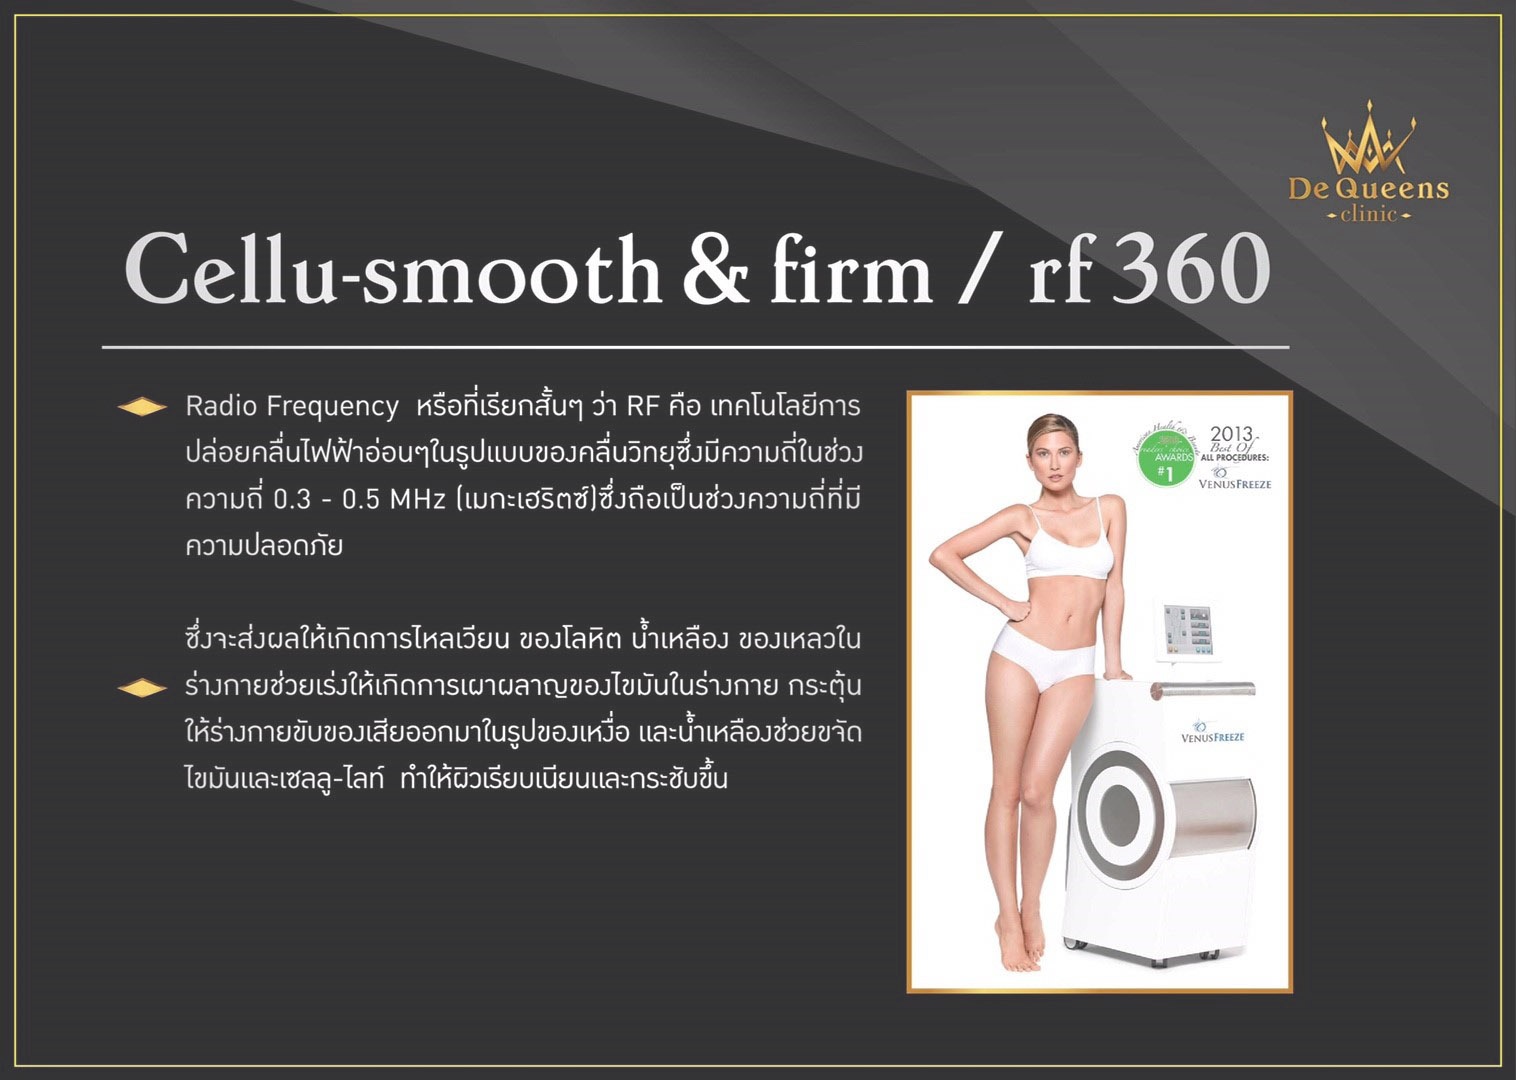 Cellu-smooth & firm / rf 360